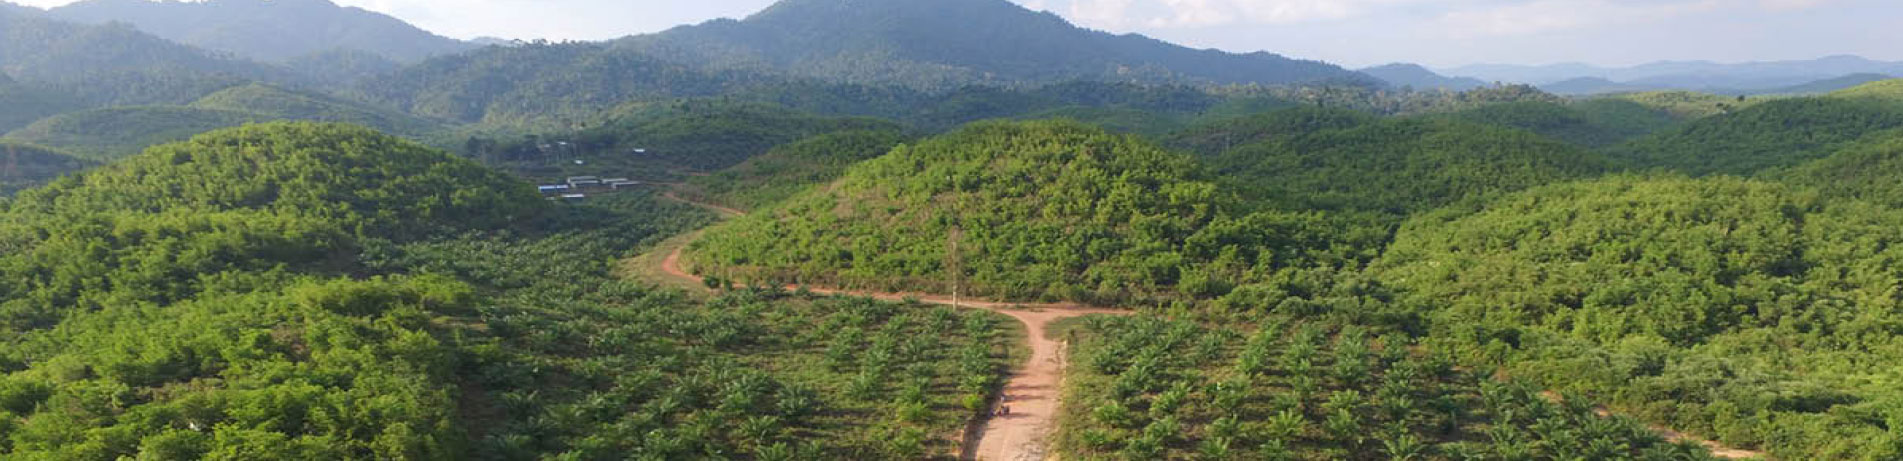 Palm oil plantation, Myanmar